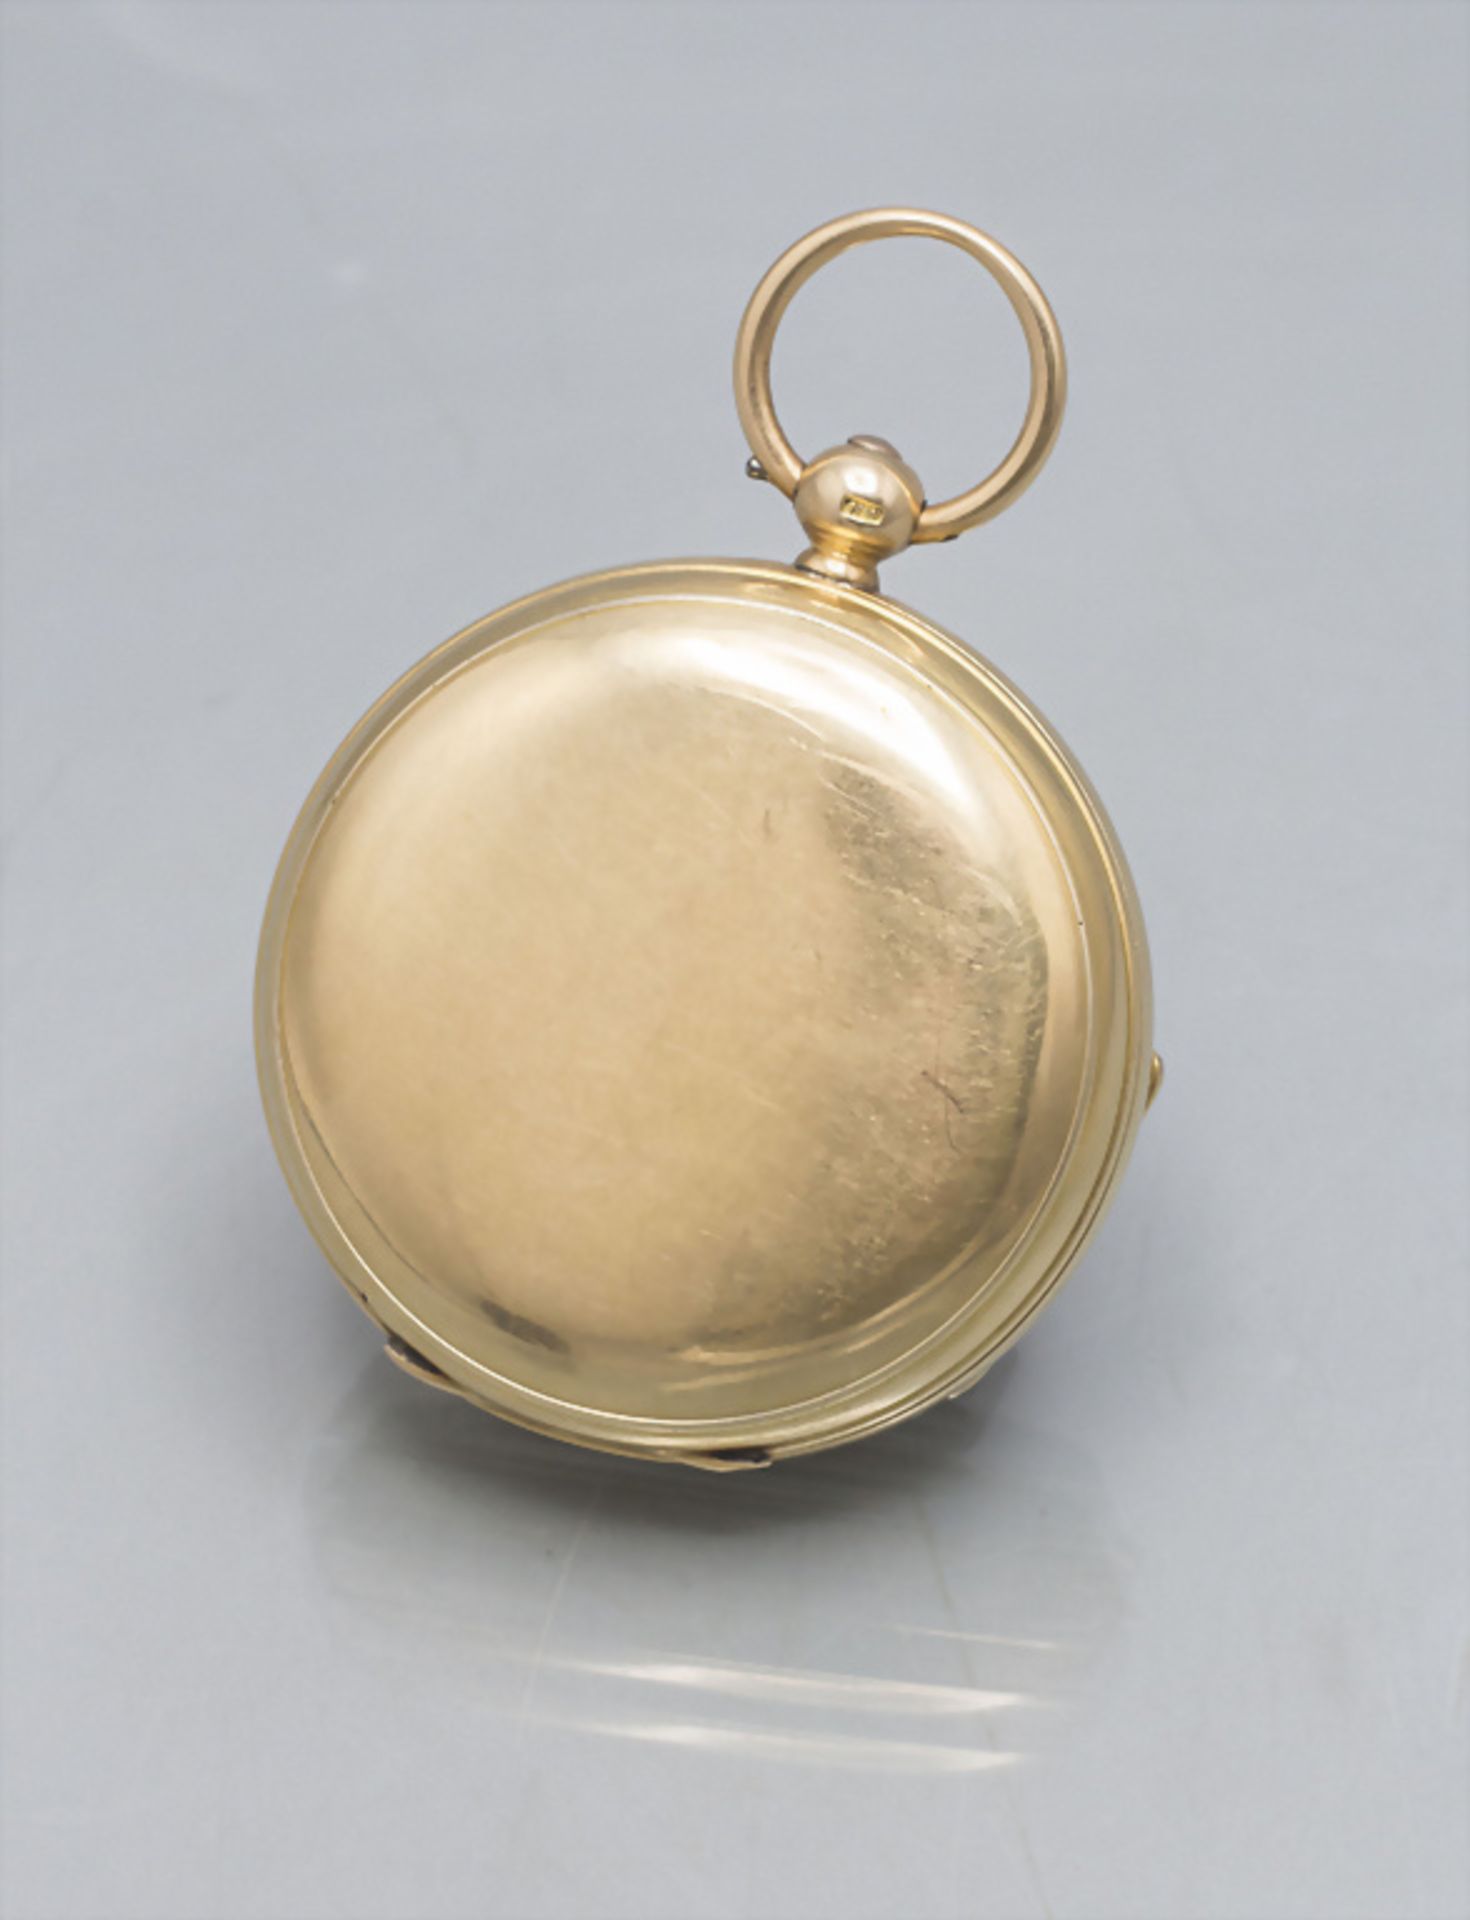 Offene Taschenuhr / An 18 ct gold open faced pocket watch, Hugh Wilkie, Glasgow, um 1900 - Bild 8 aus 8